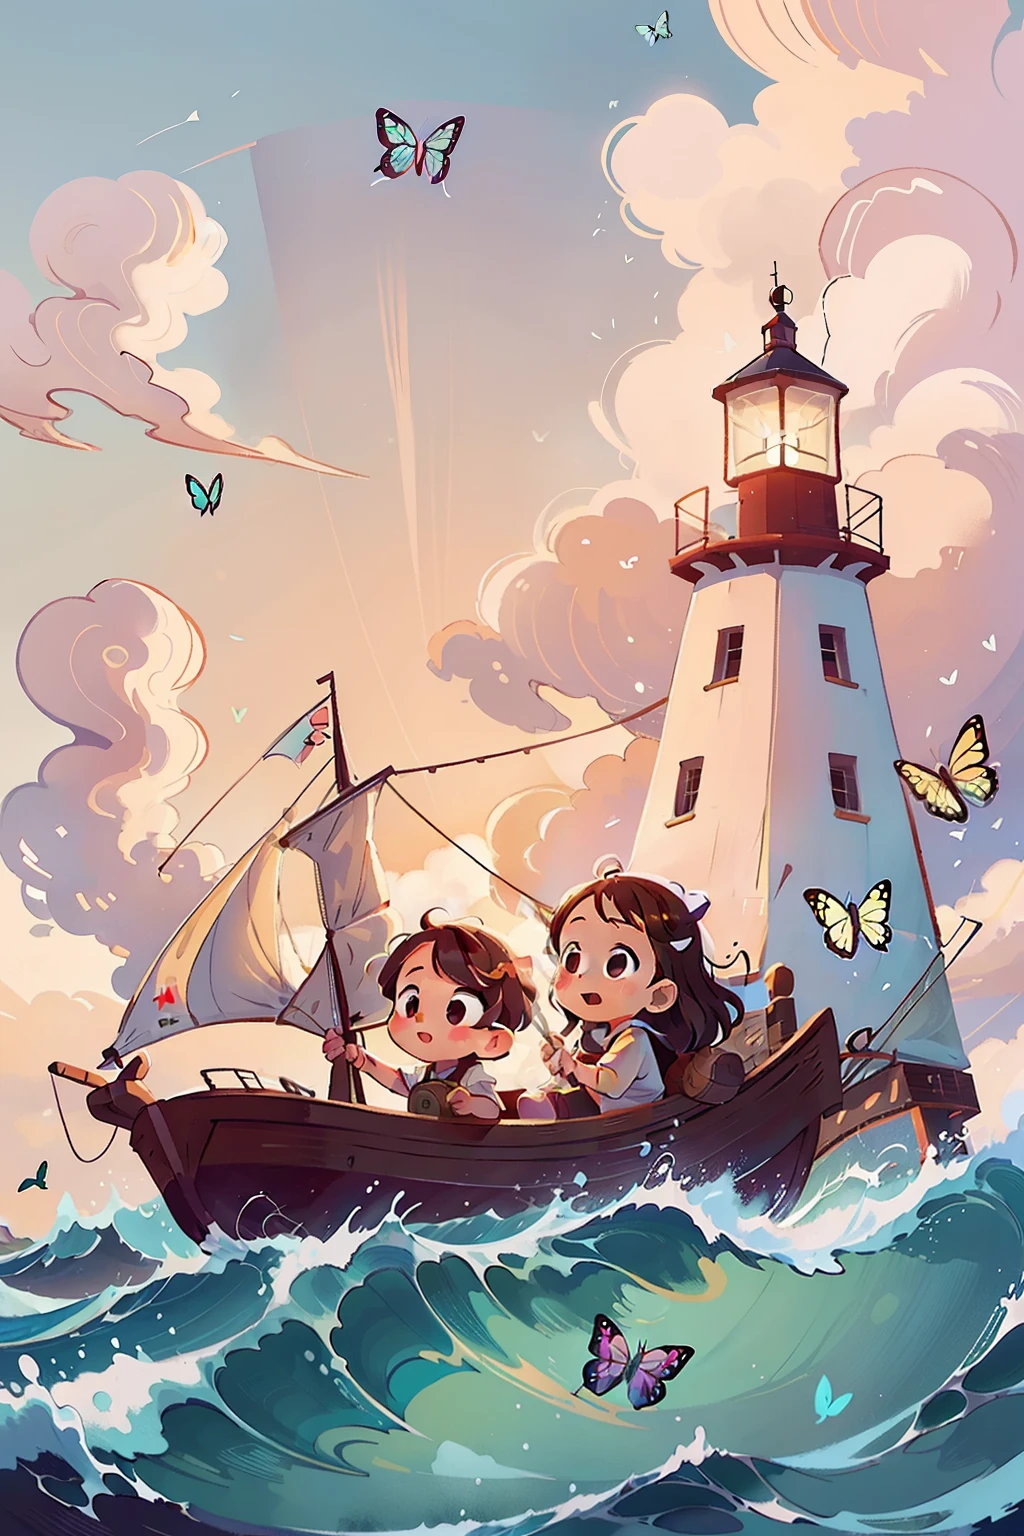 ボートに乗っている2人の幼い女の子の画像を生成します, 波, 海, 白い雲が浮かぶ空. カラフルな蝶, 背景に灯台がある,